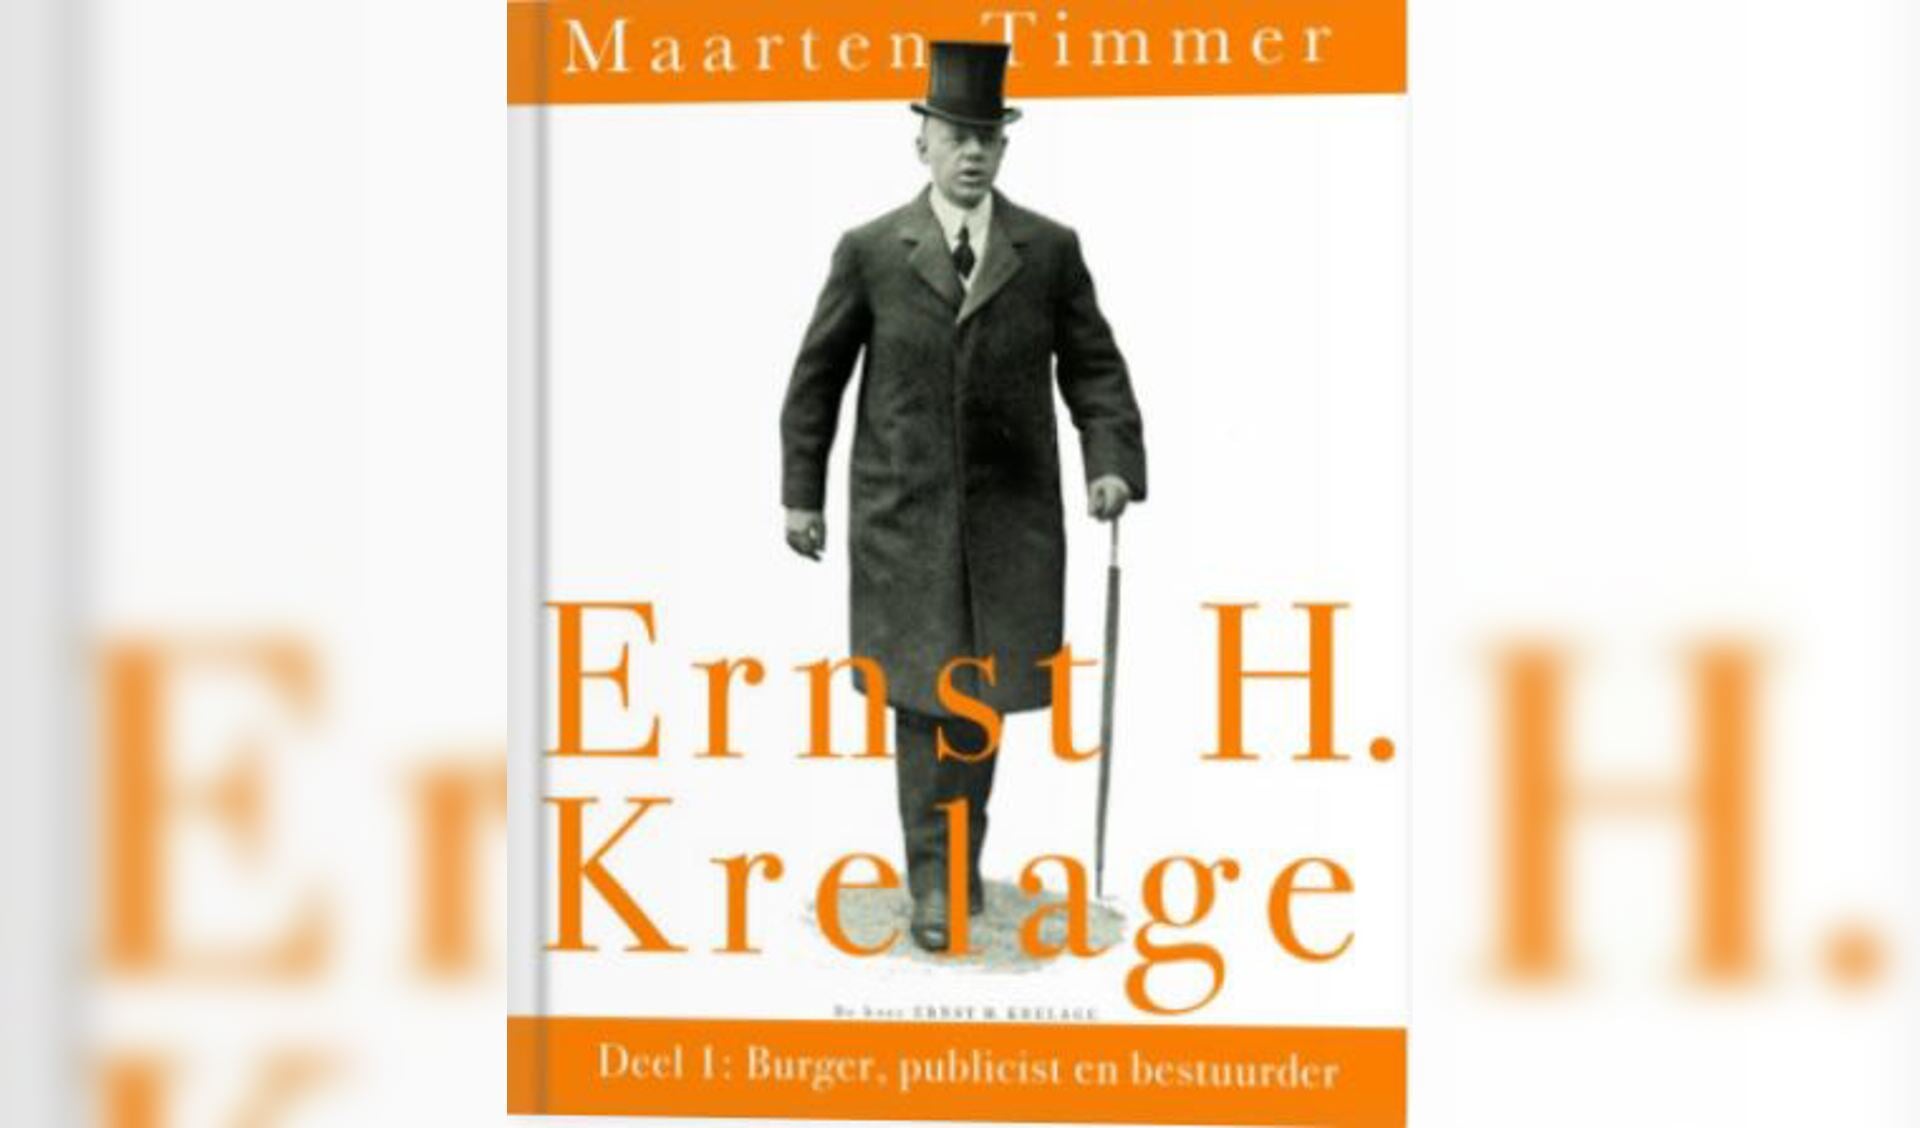 De voorkant met Ernst Krelage van deel 1 van het boek.